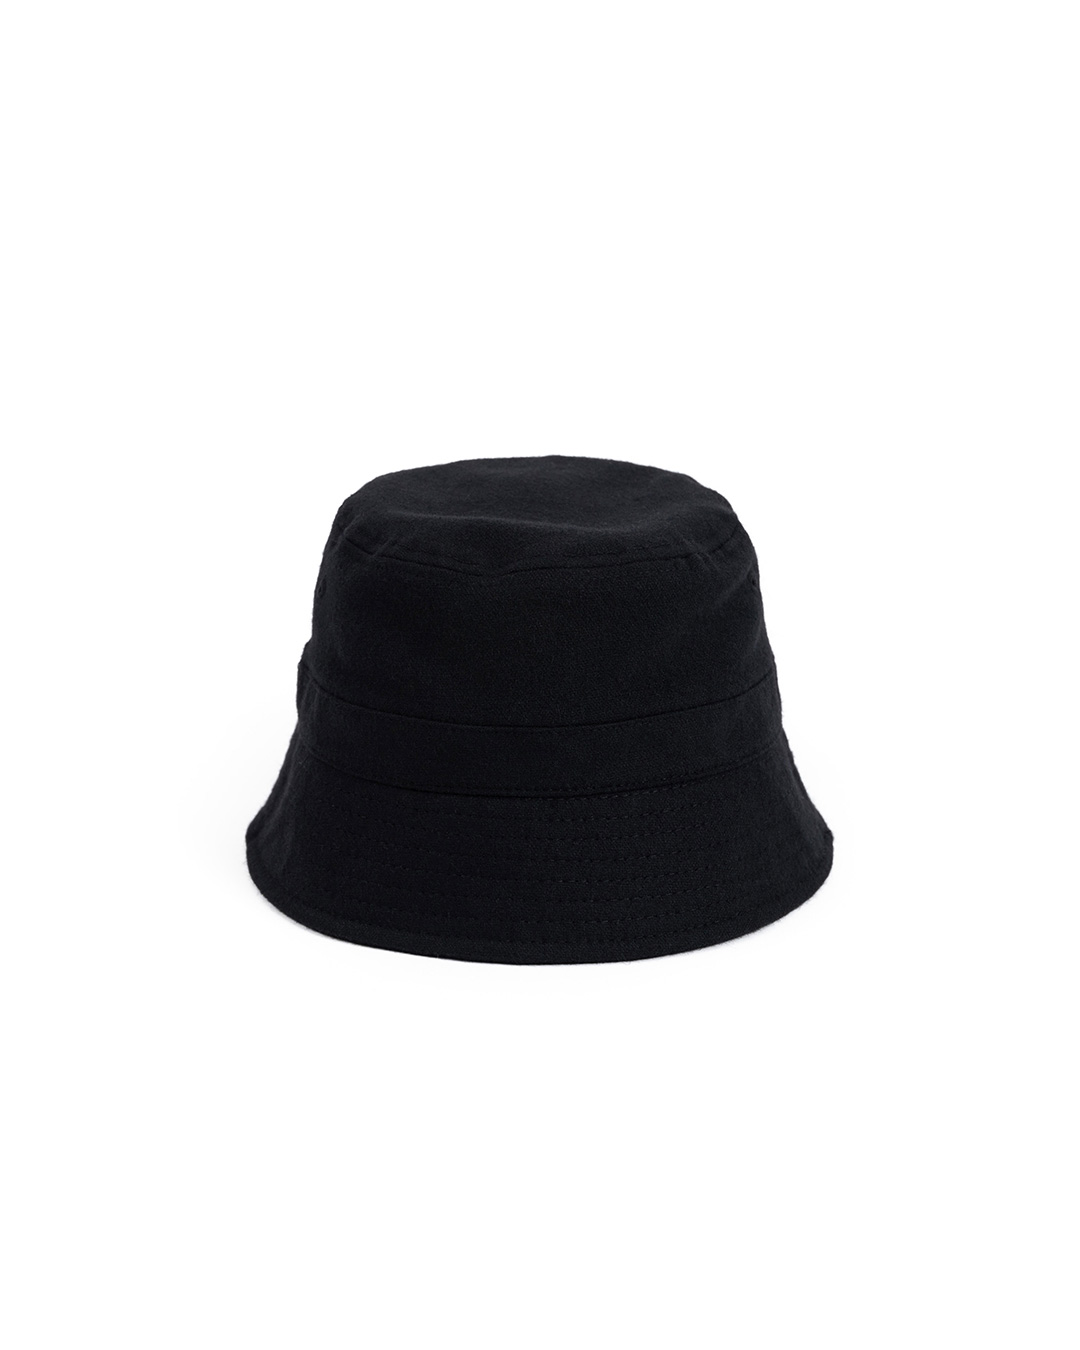 LW WOOL BUCKET HAT (black)